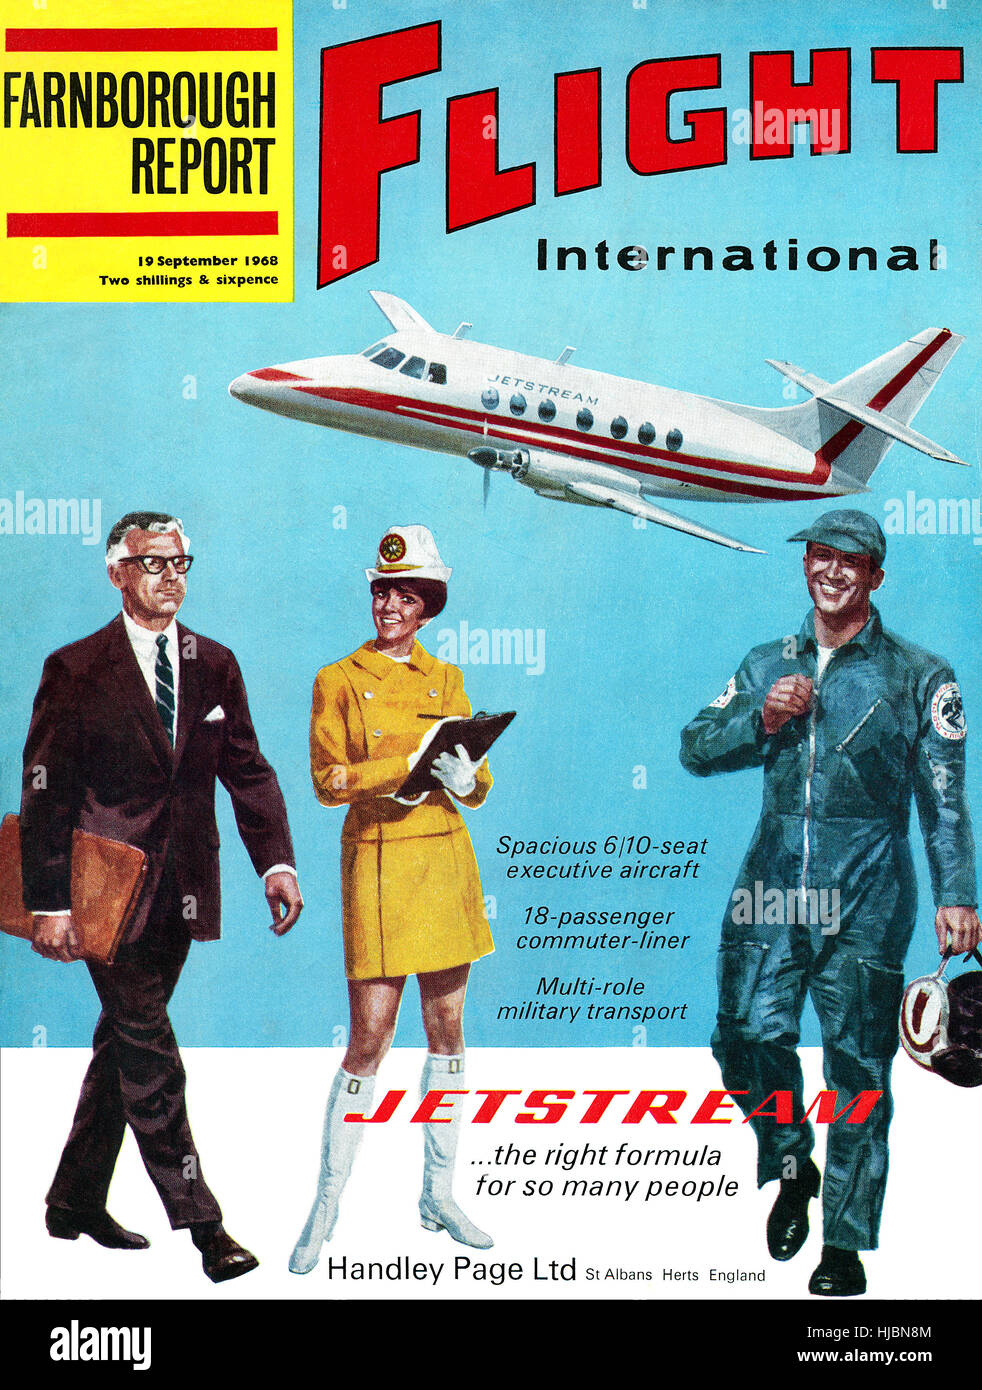 Vordere Abdeckung des Flight International Magazin für 19. September 1968, mit Werbung für die Handley Page Jetstream-Flugzeuge Stockfoto